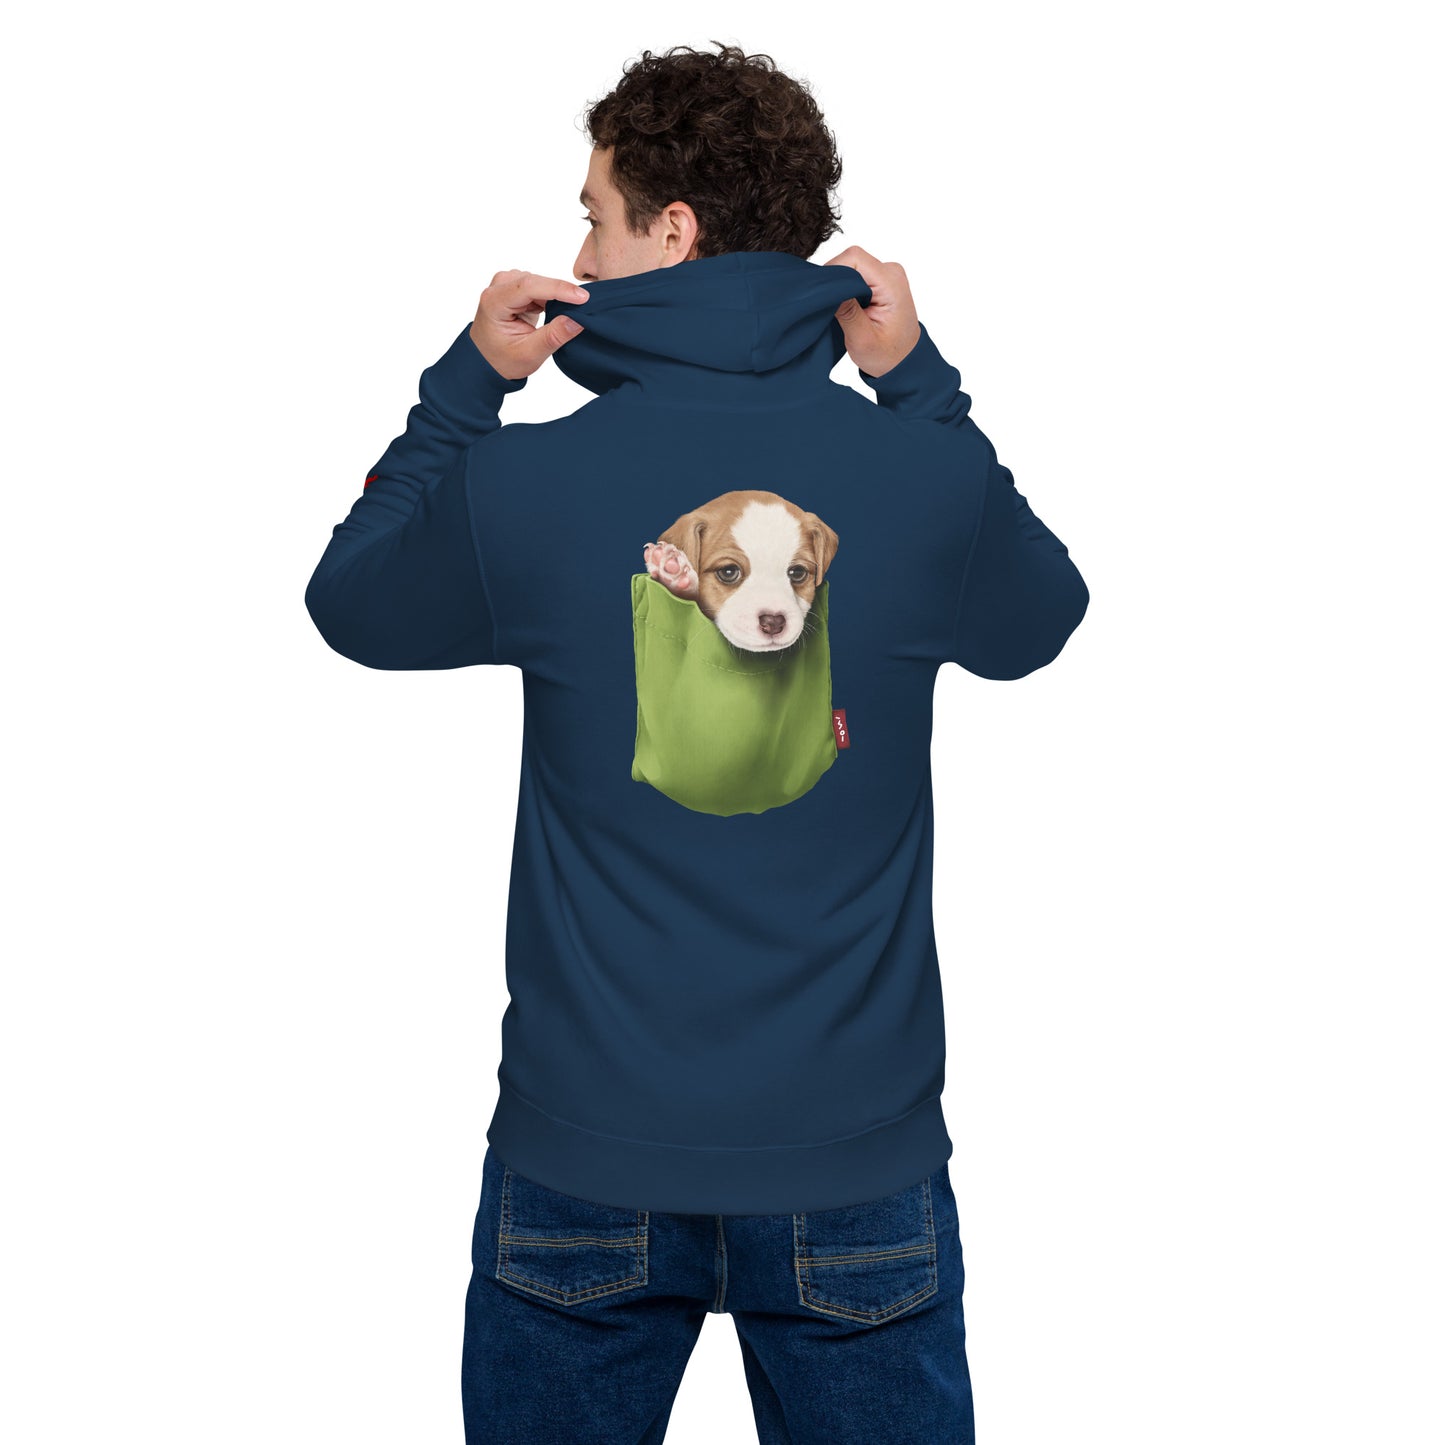 Jack Russell Terrier Unisex basic zip hoodie